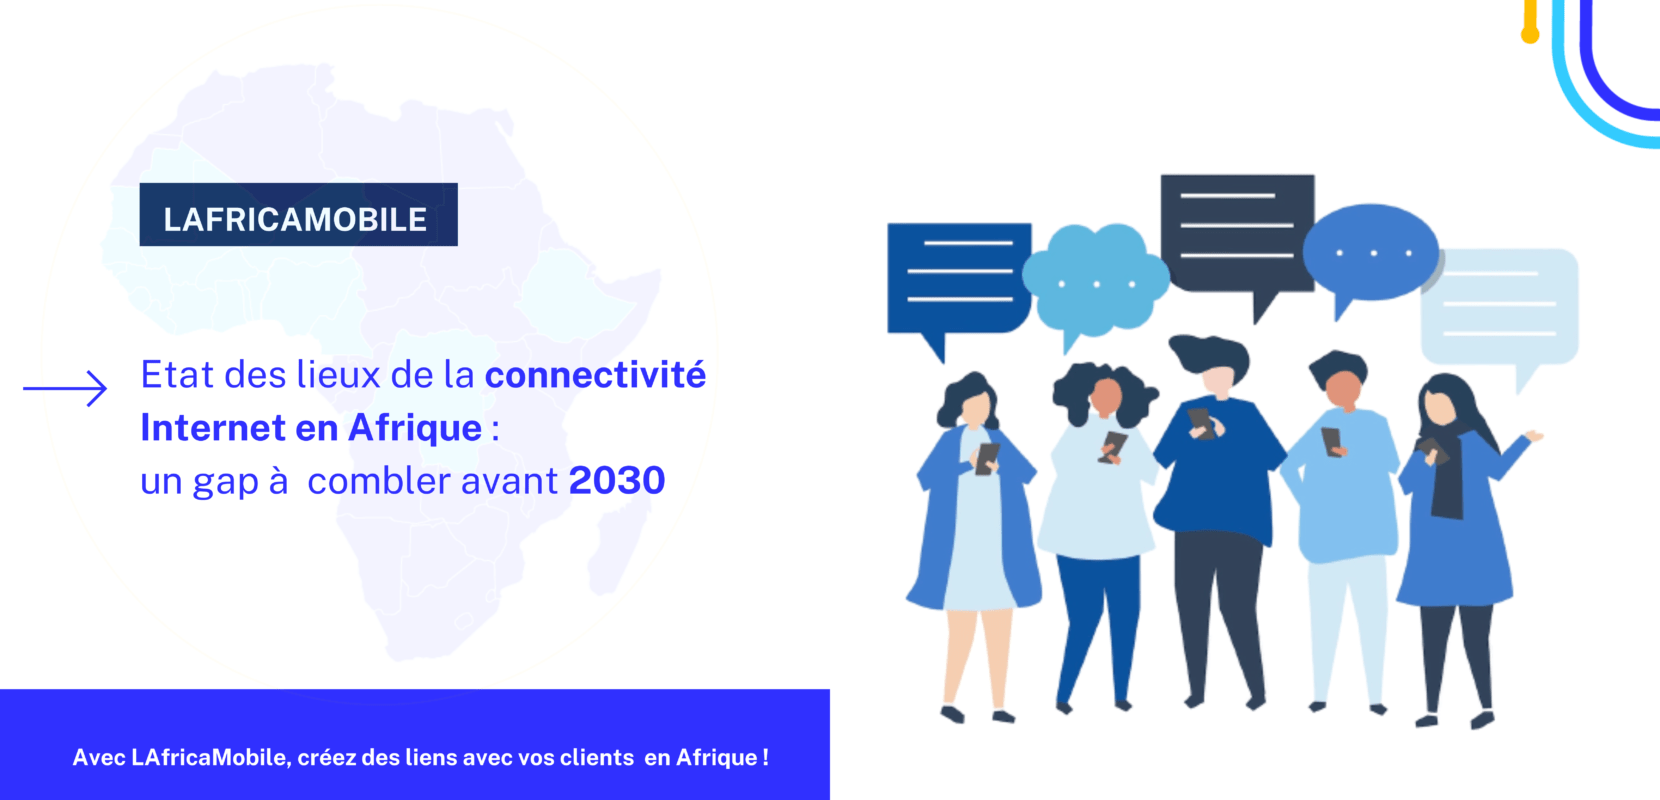 Etat des lieux de la connectivité Internet en Afrique : un gap à combler avant 2030